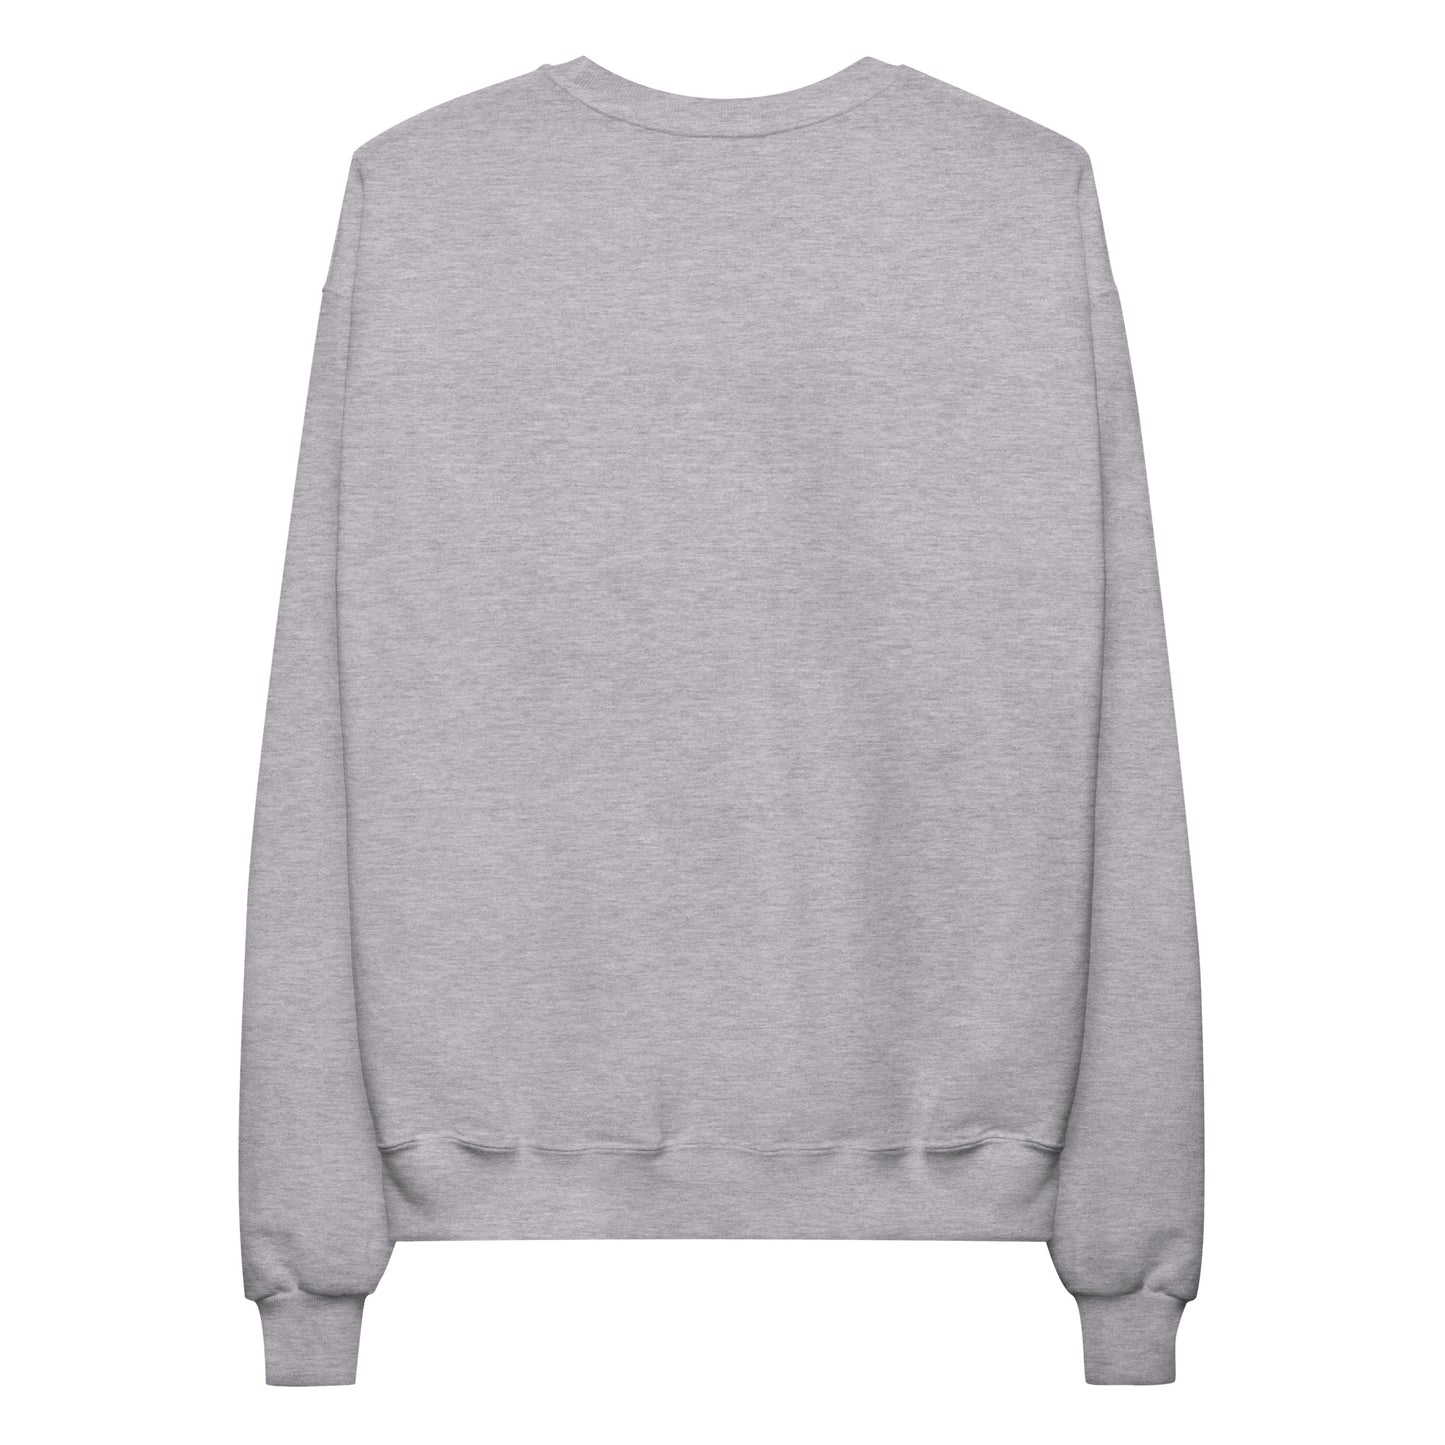 Paris Unisex Fleece Sweatshirt